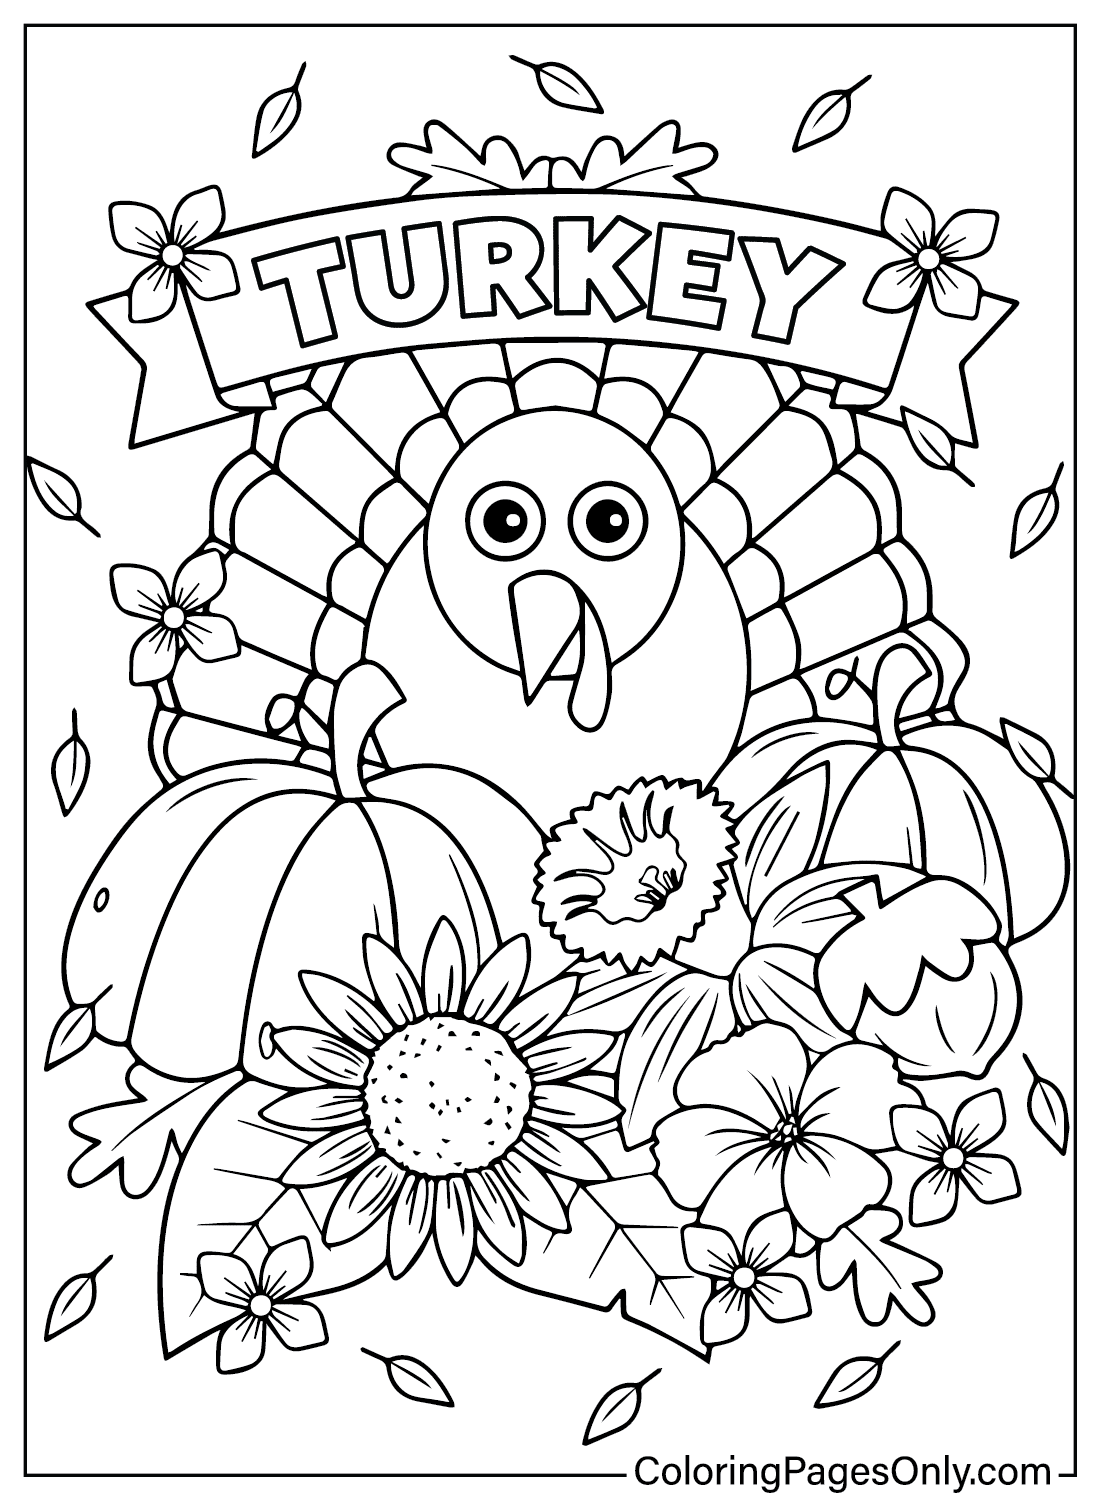 Página para colorear de Turquía de Turquía